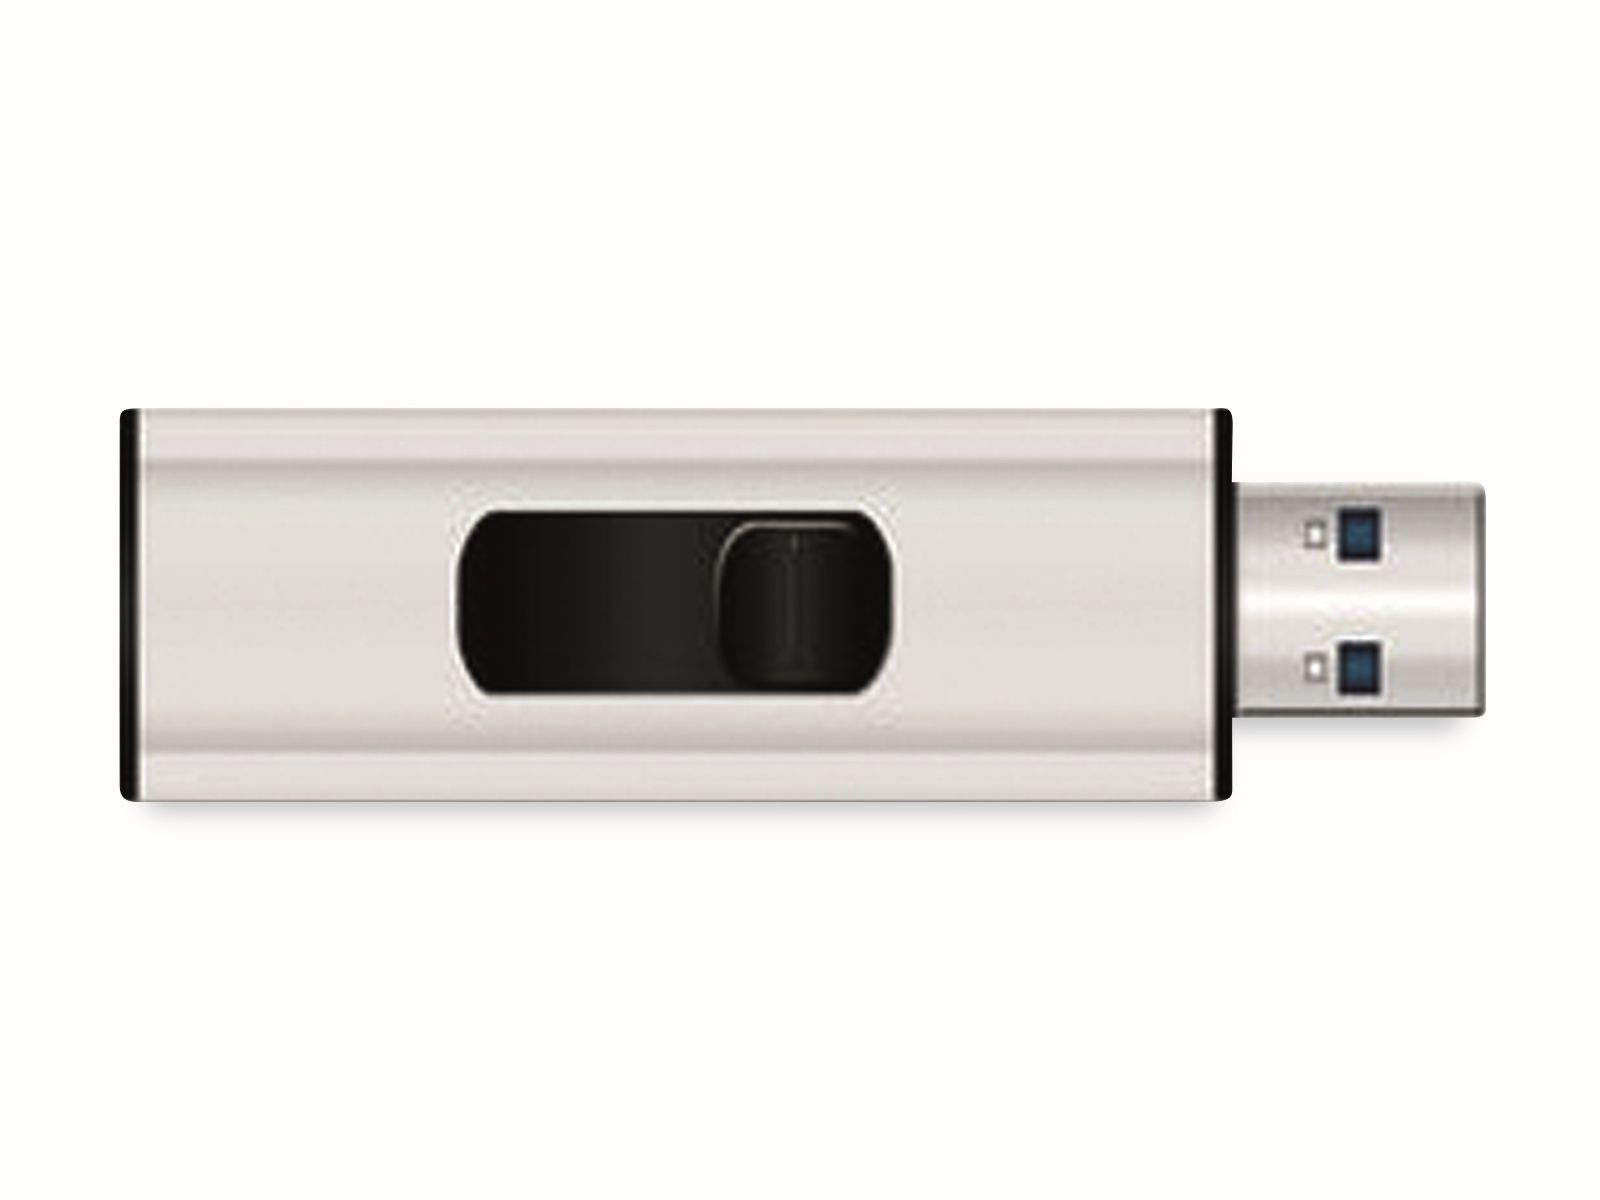 USB 8 USB-Stick 3.0, GB) (silber, USB-Stick GB 8 MEDIARANGE MR914,